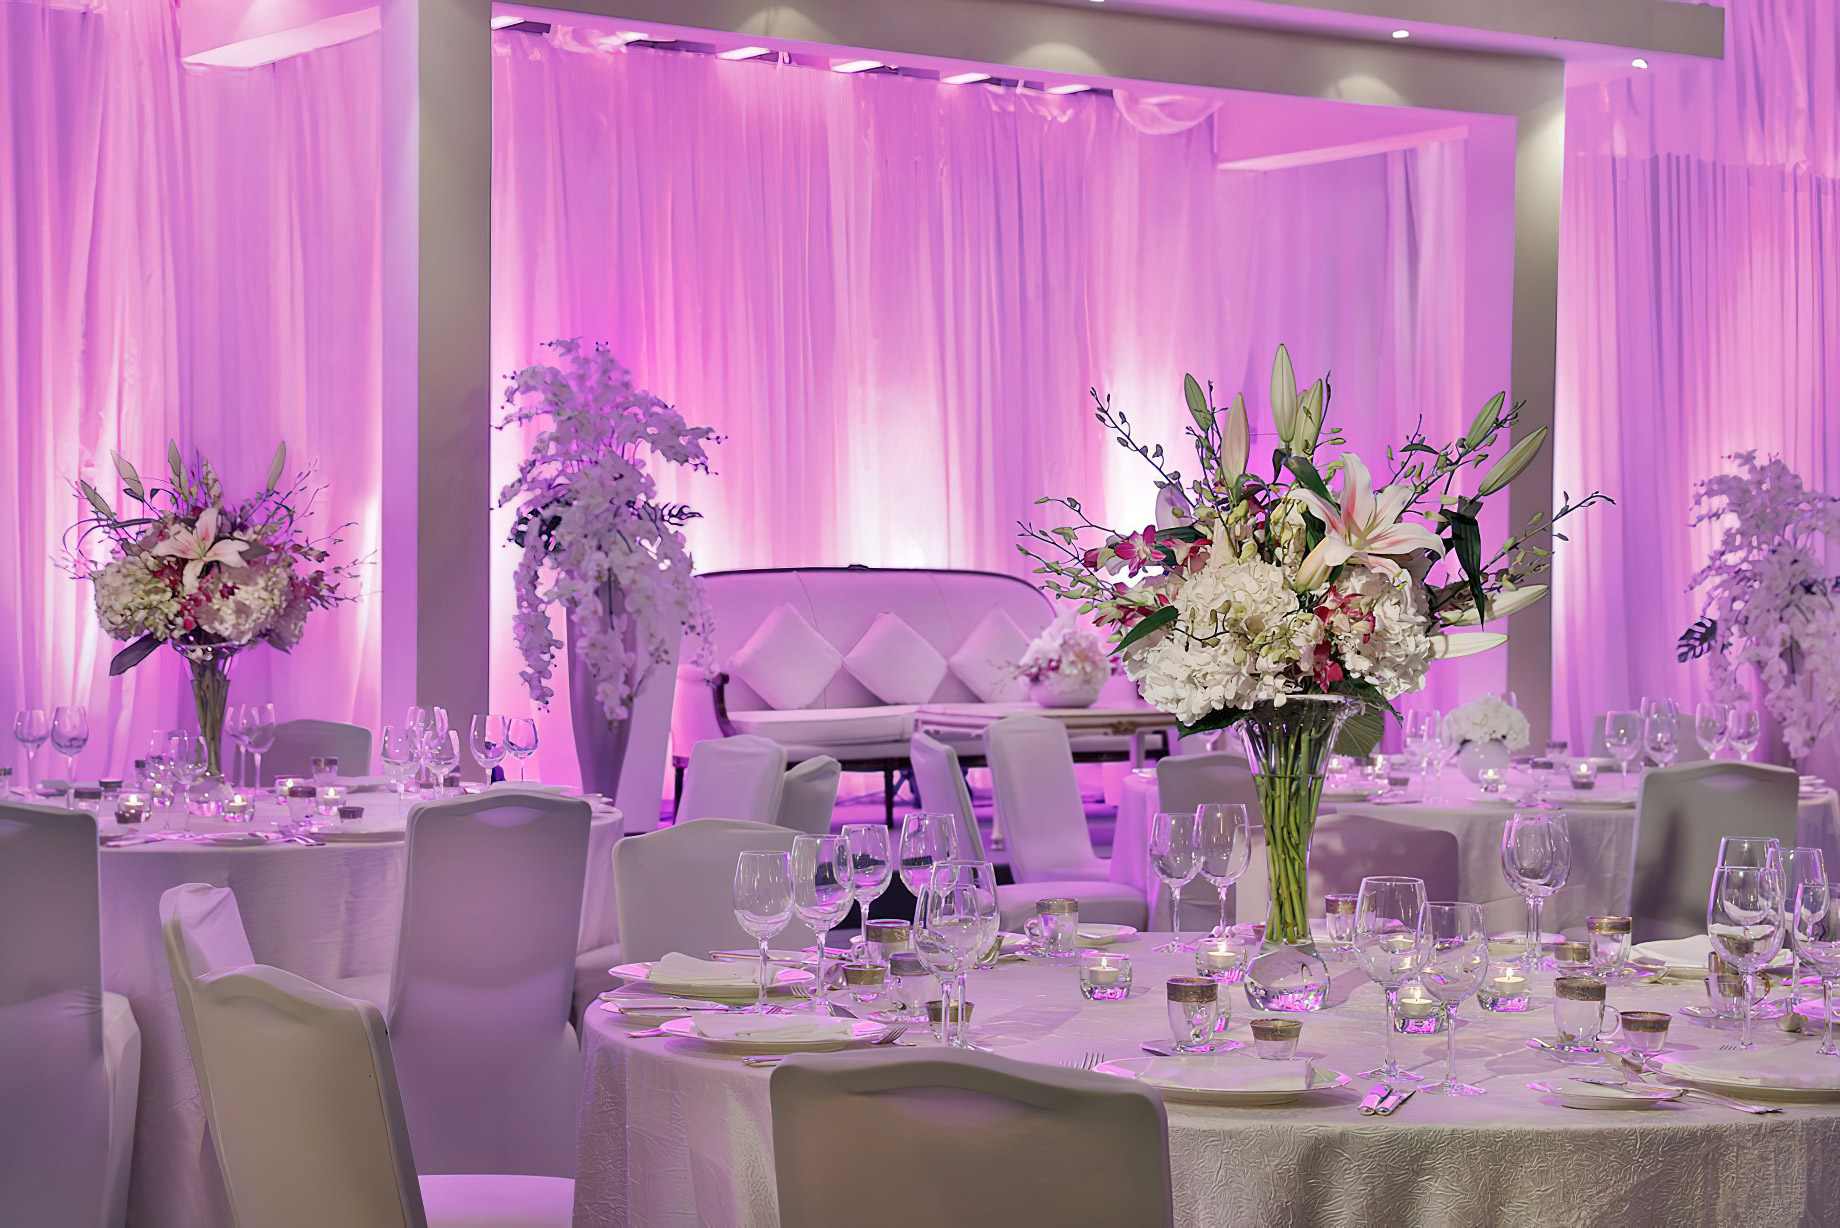 The Ritz-Carlton, Bahrain Resort Hotel - Manama, Bahrain - Wedding Event Setup